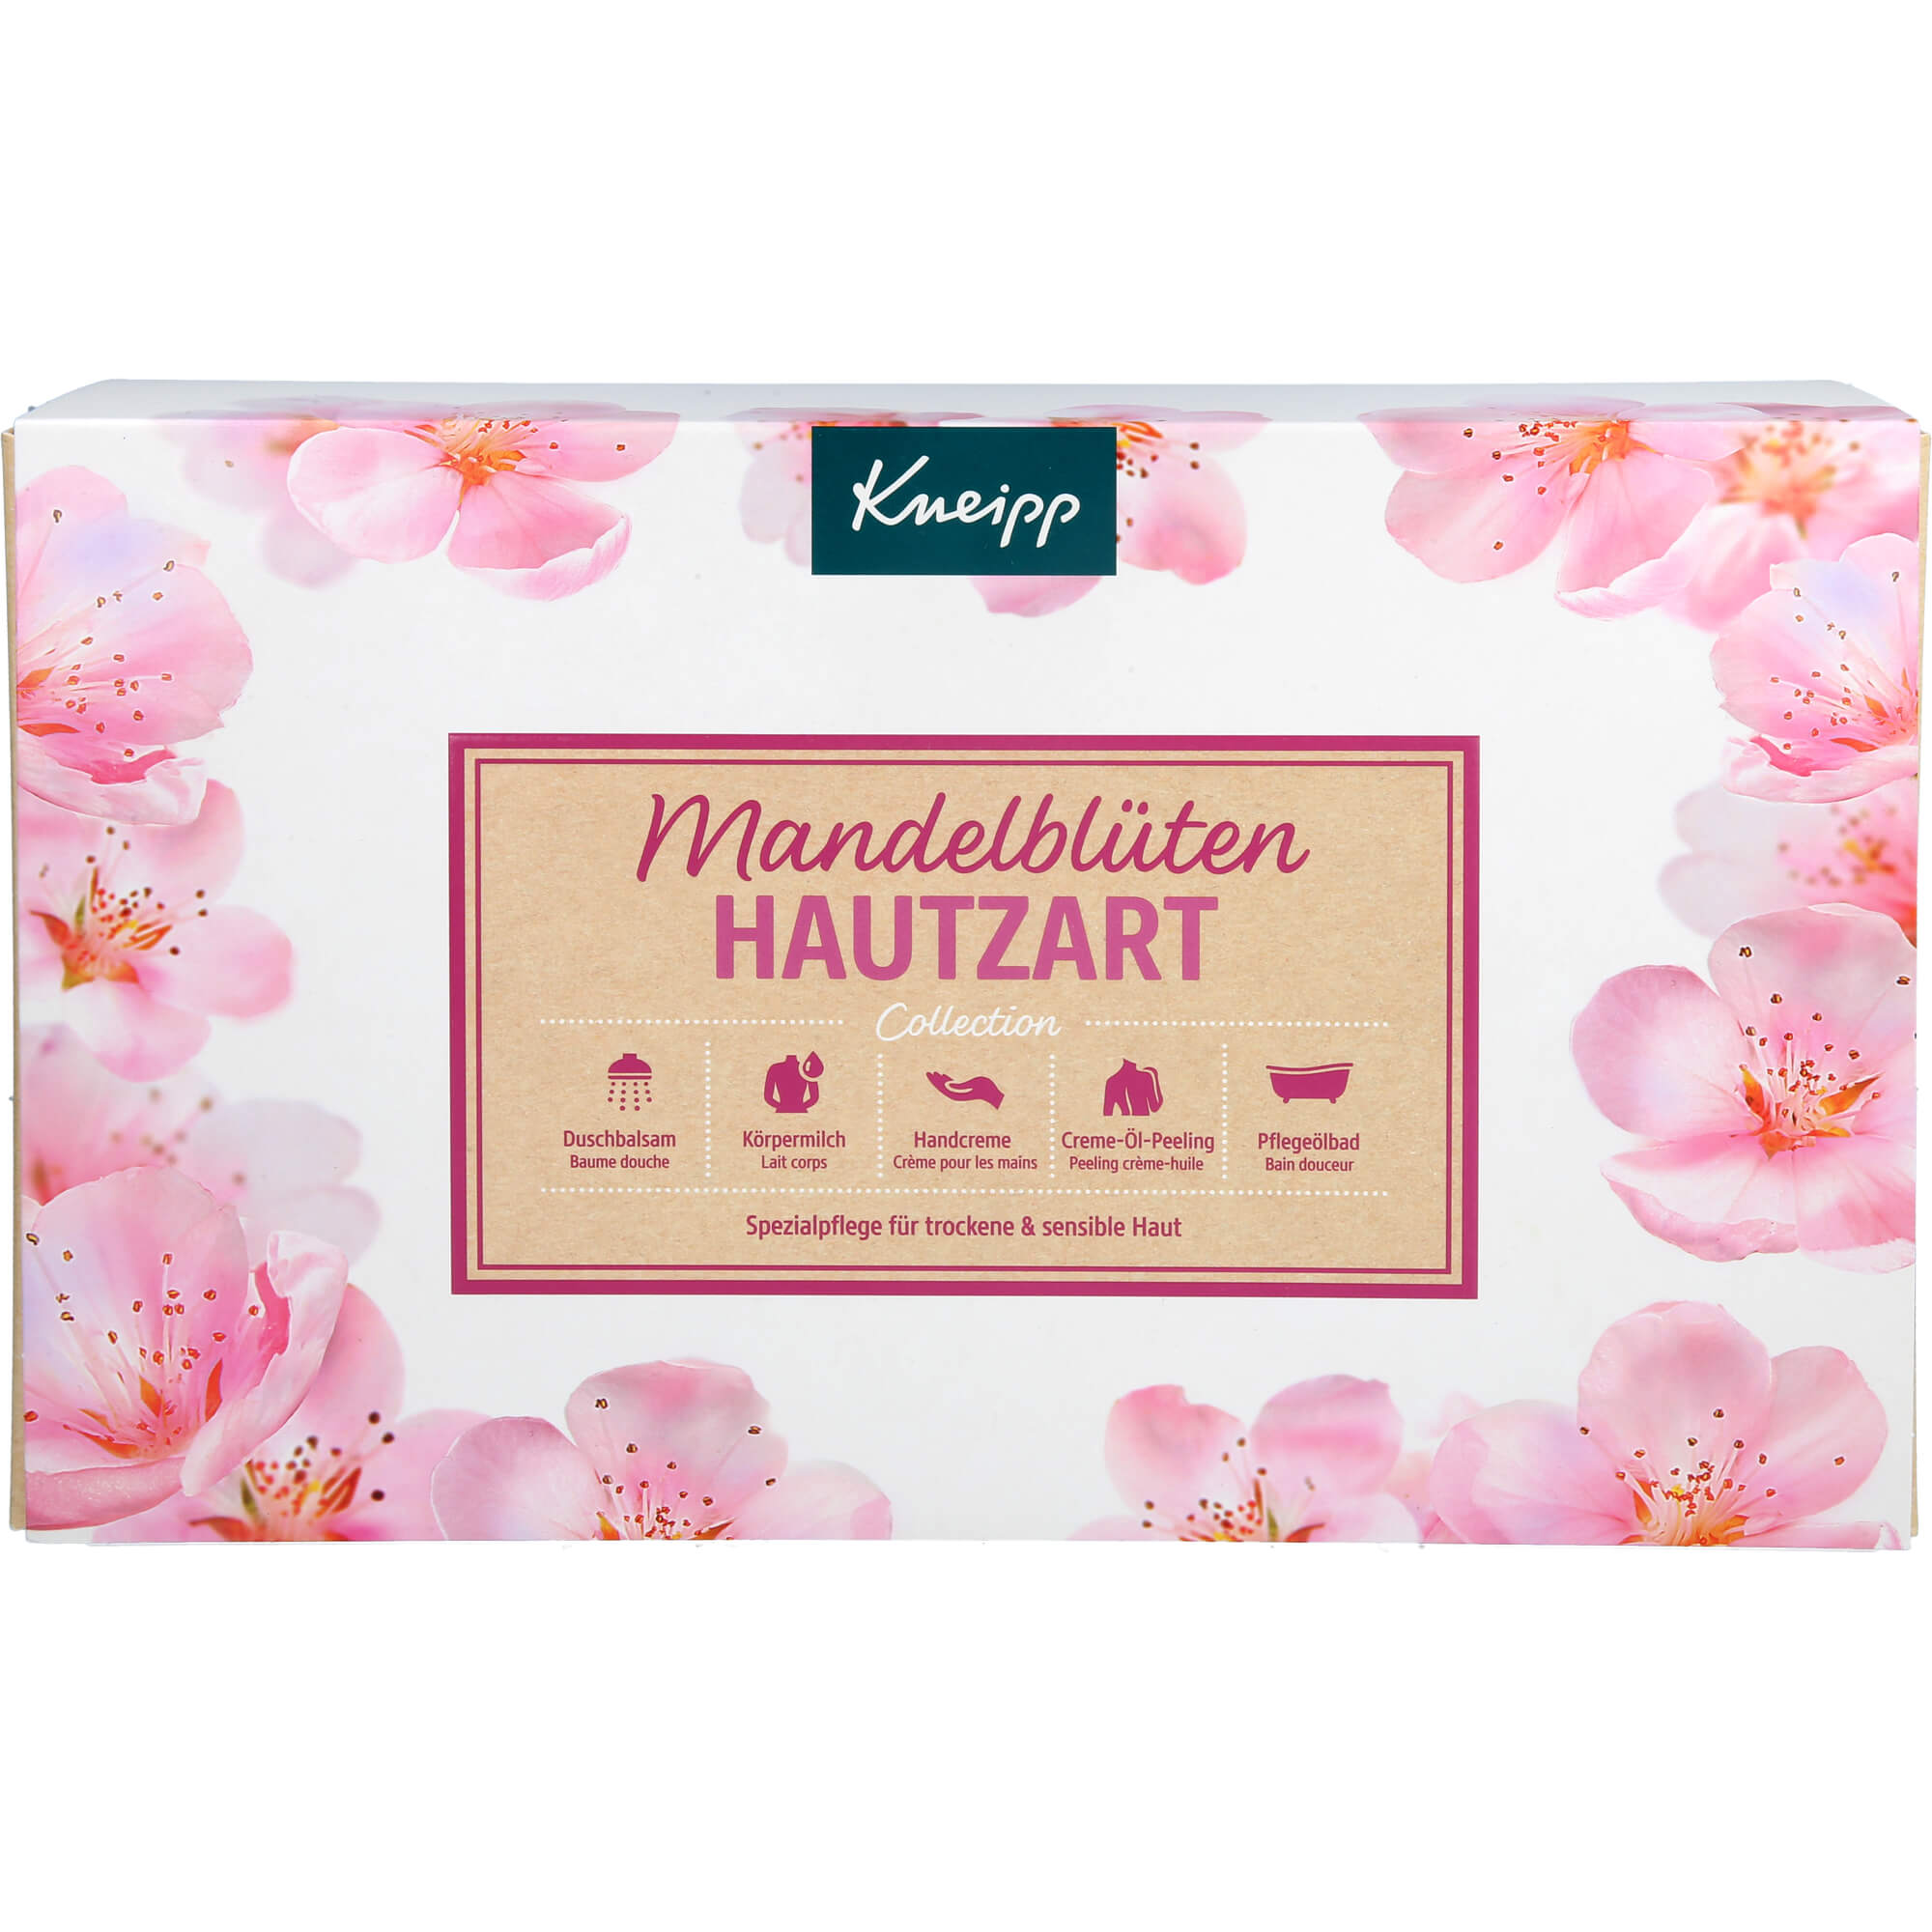 KNEIPP Mandelblüten Hautzart Collection GP